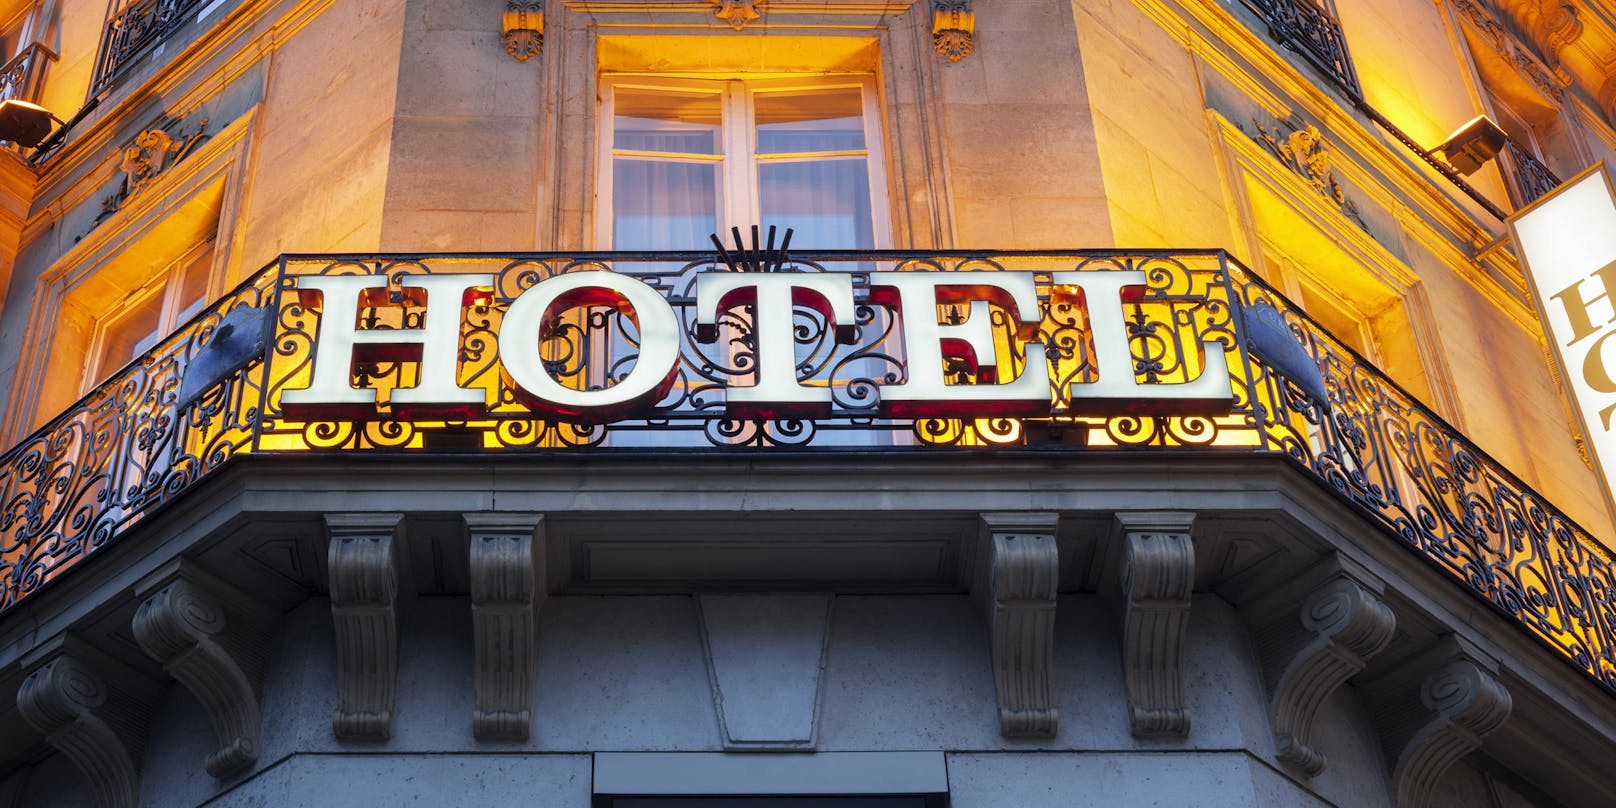 Der Lockdown ist vorbei - auch die Wiener Hotels dürfen wieder ihre Pforten für Touristen öffnen.